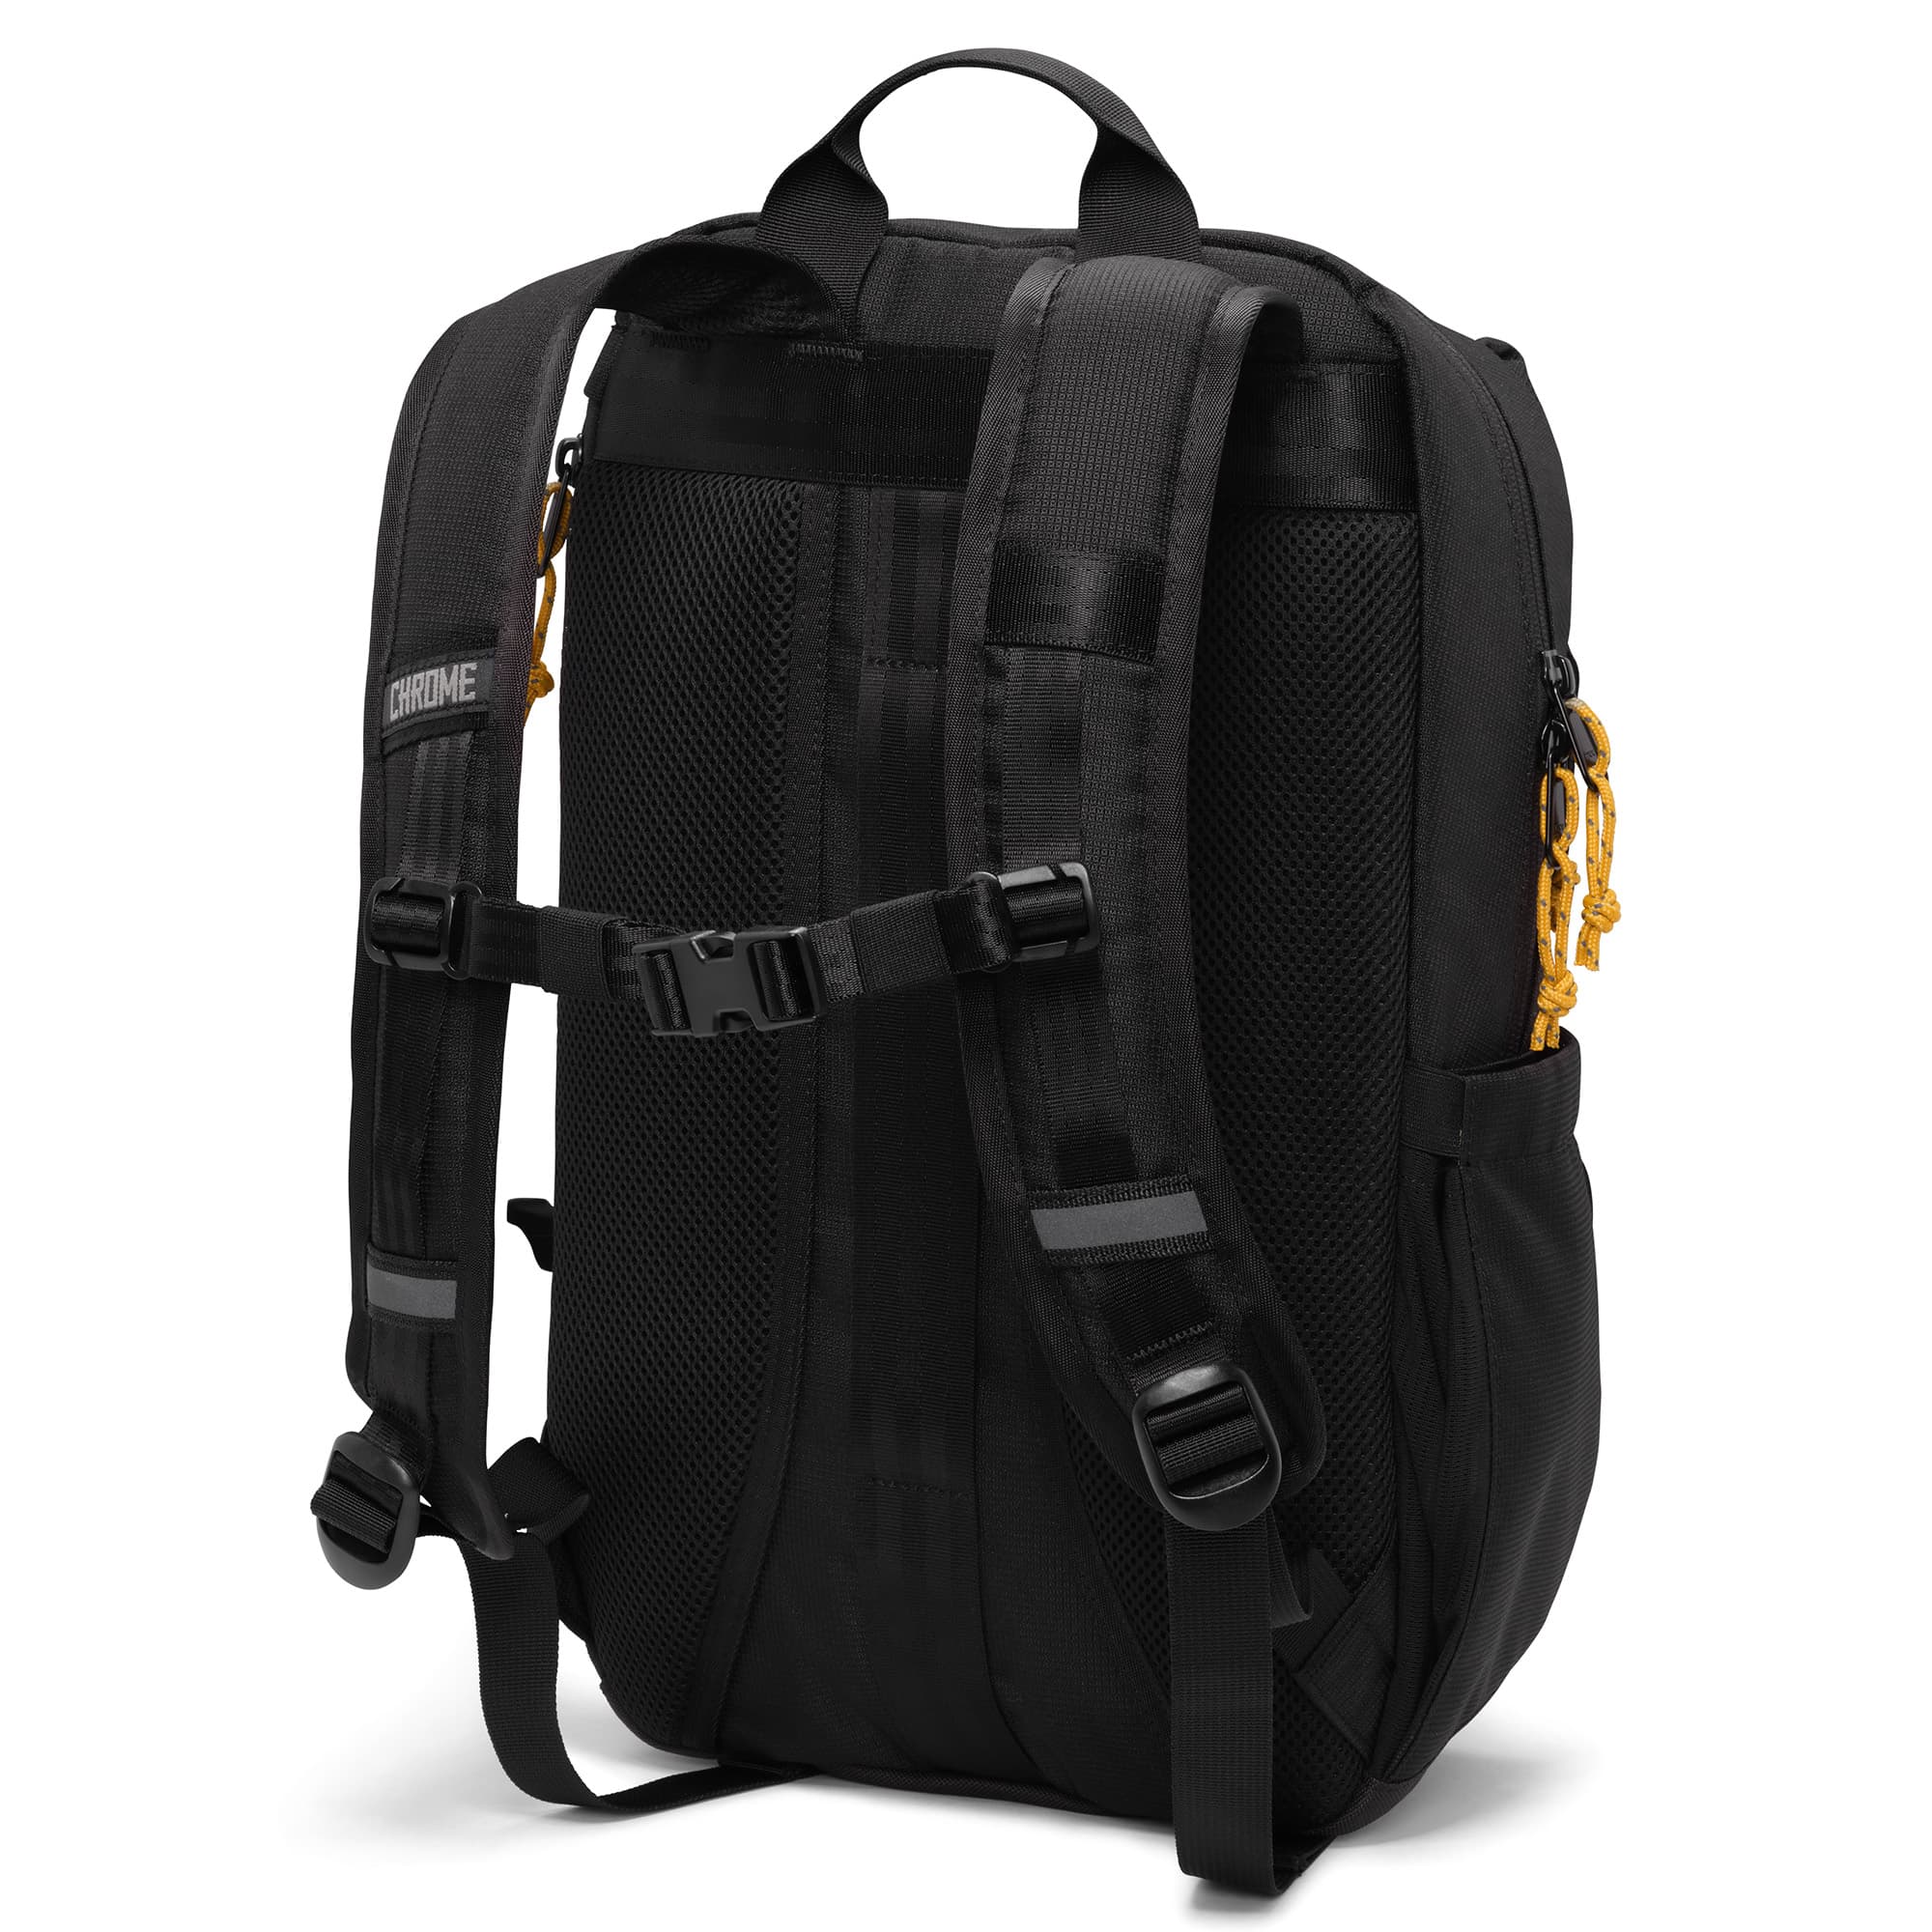 Ruckas 14L Backpack in black harness detail #color_black